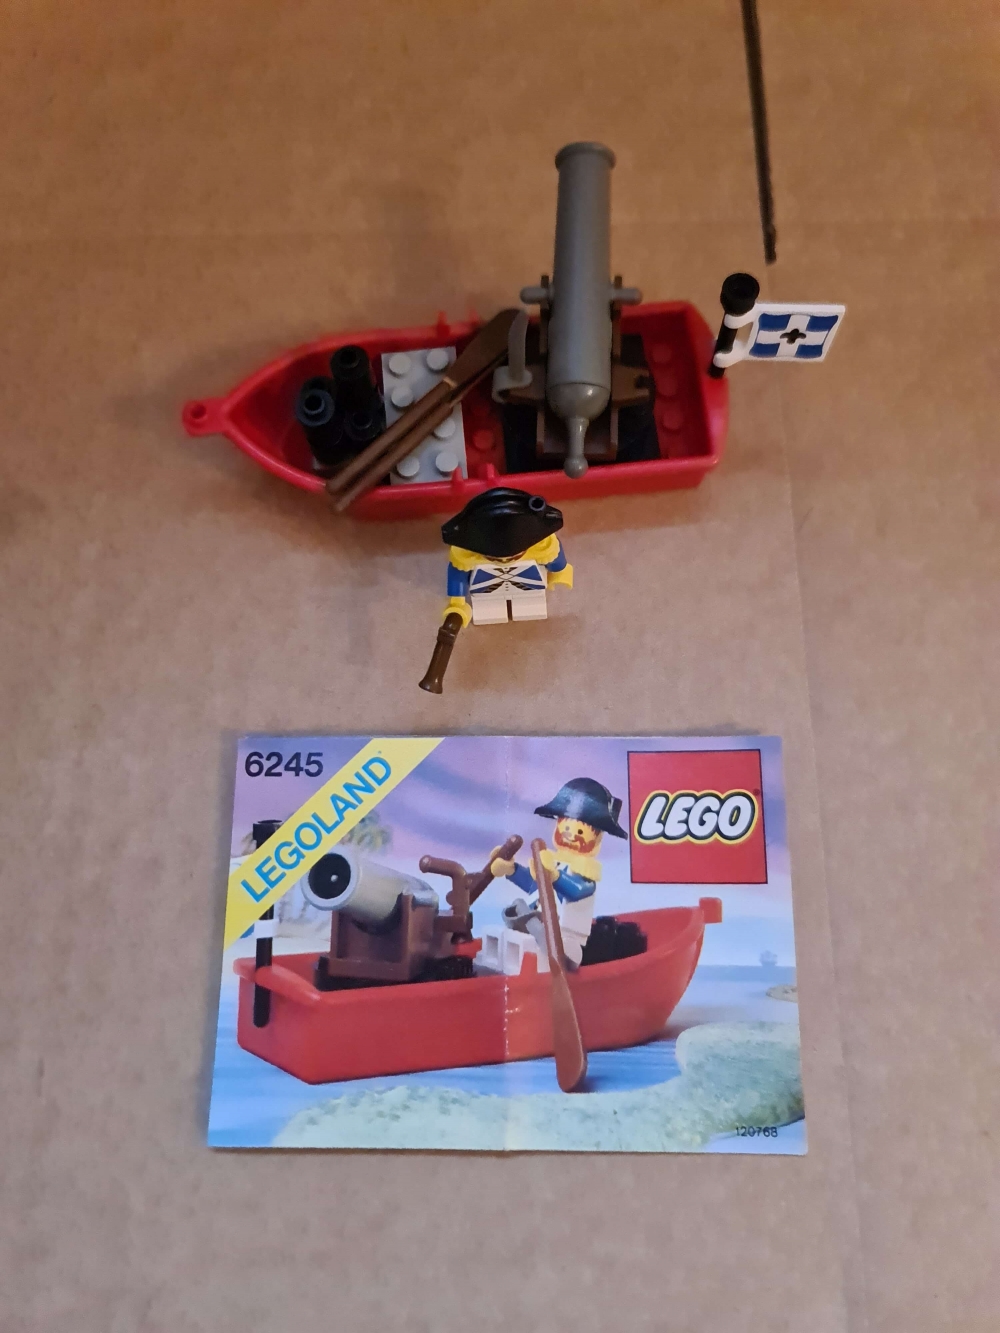 Sett 6245 fra Lego Pirates : Pirates 1 serien.

Meget pent. Nydelig figur.
Komplett med manual.